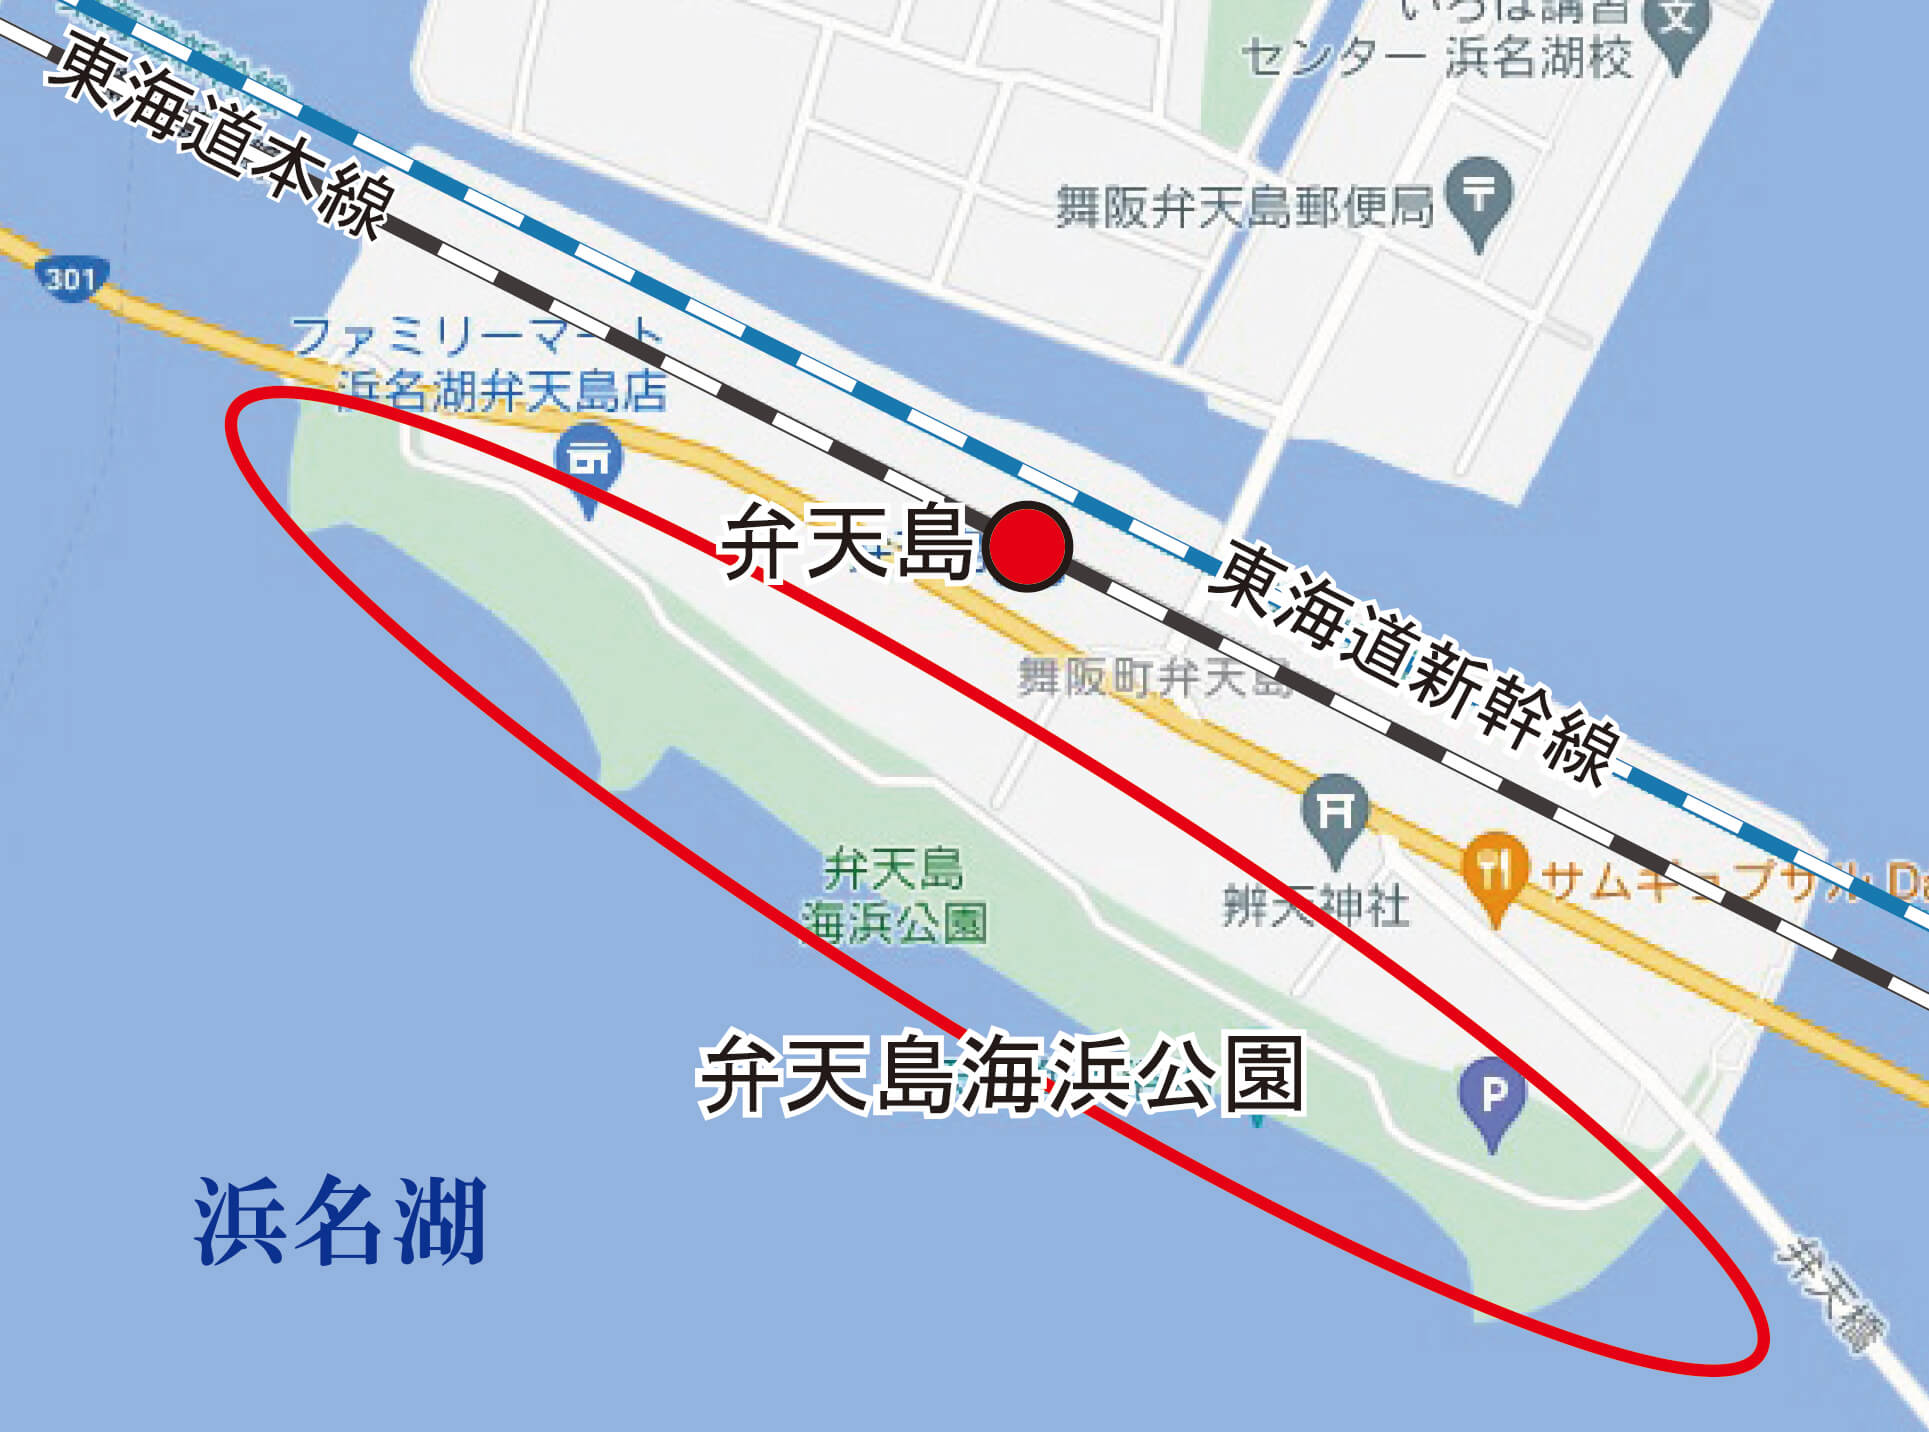 弁天島海浜公園位置図